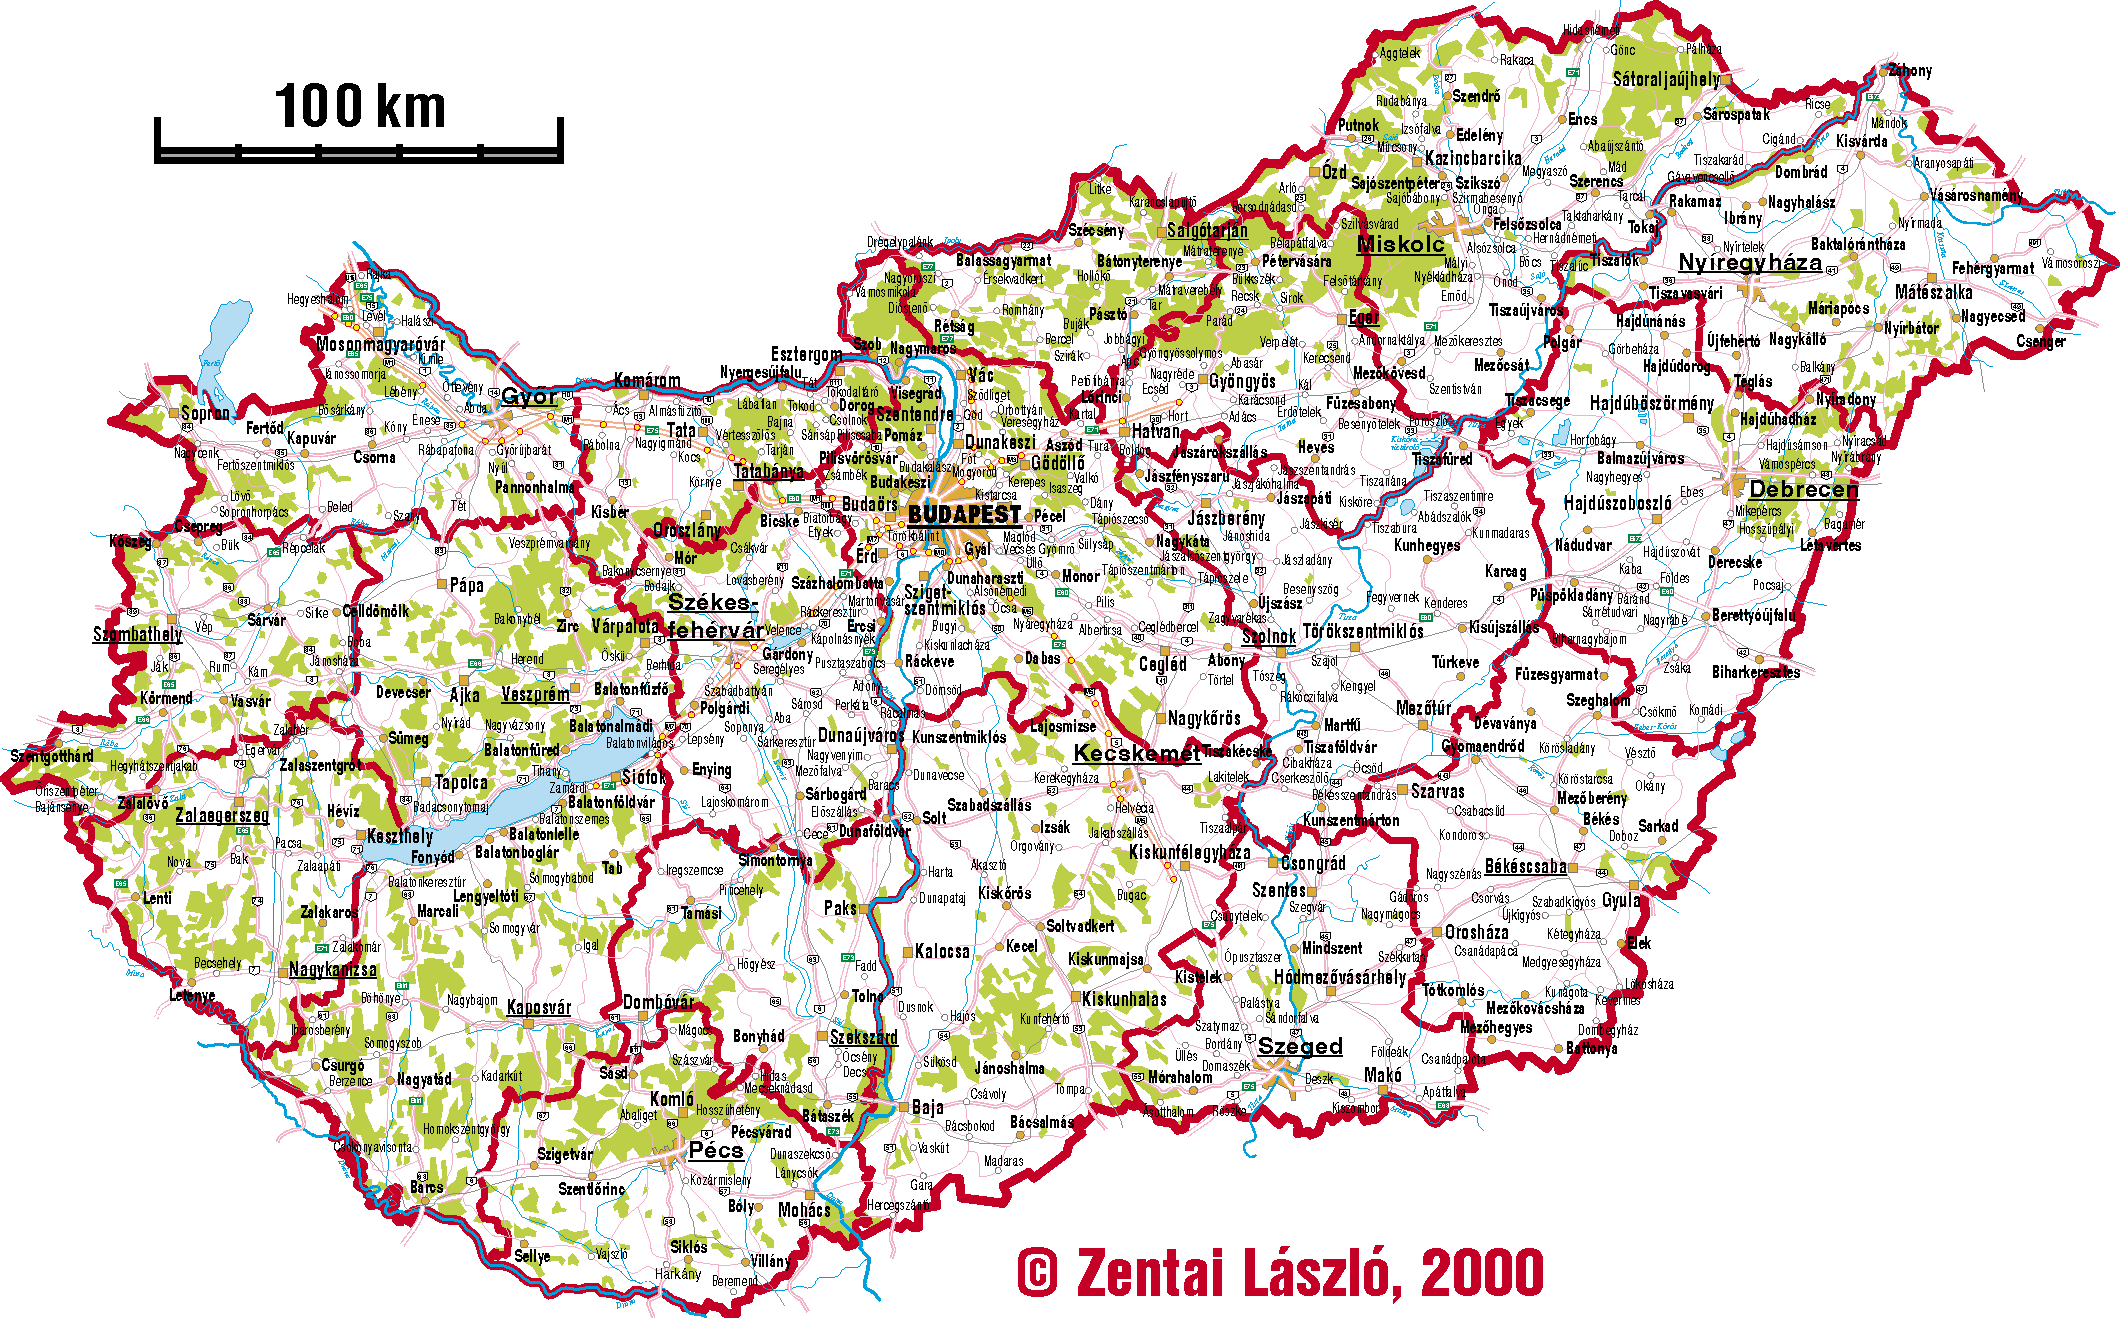 magyarország térkép útvonaltervező Térkép Kalauz online térkép portál : térképek, útvonaltervező  magyarország térkép útvonaltervező